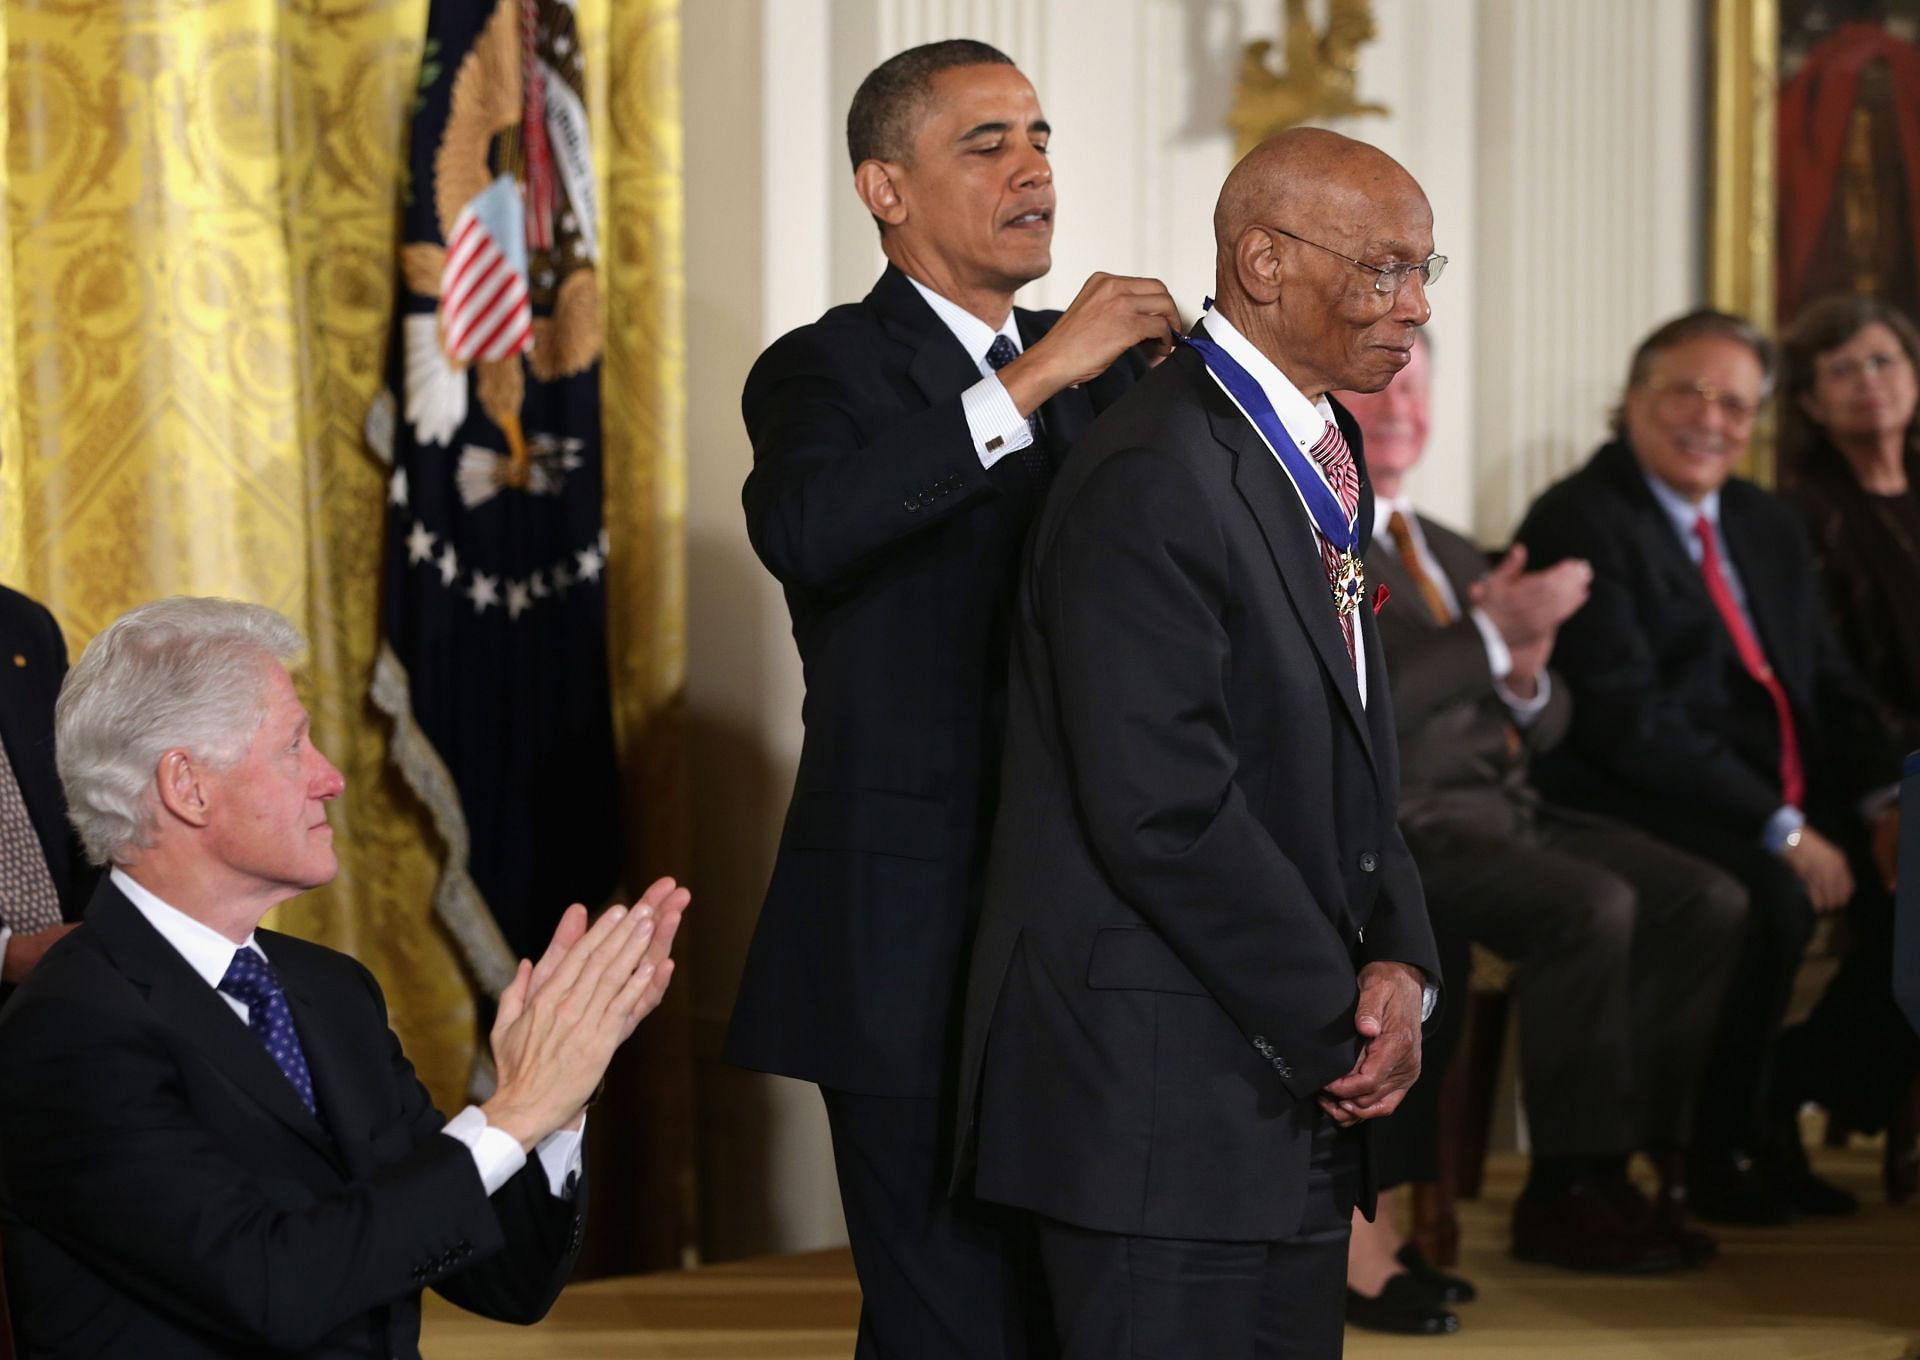 President Barack Obama awards the Presidential Medal of Freedom to baseball Hall-of-Famer Ernie Banks